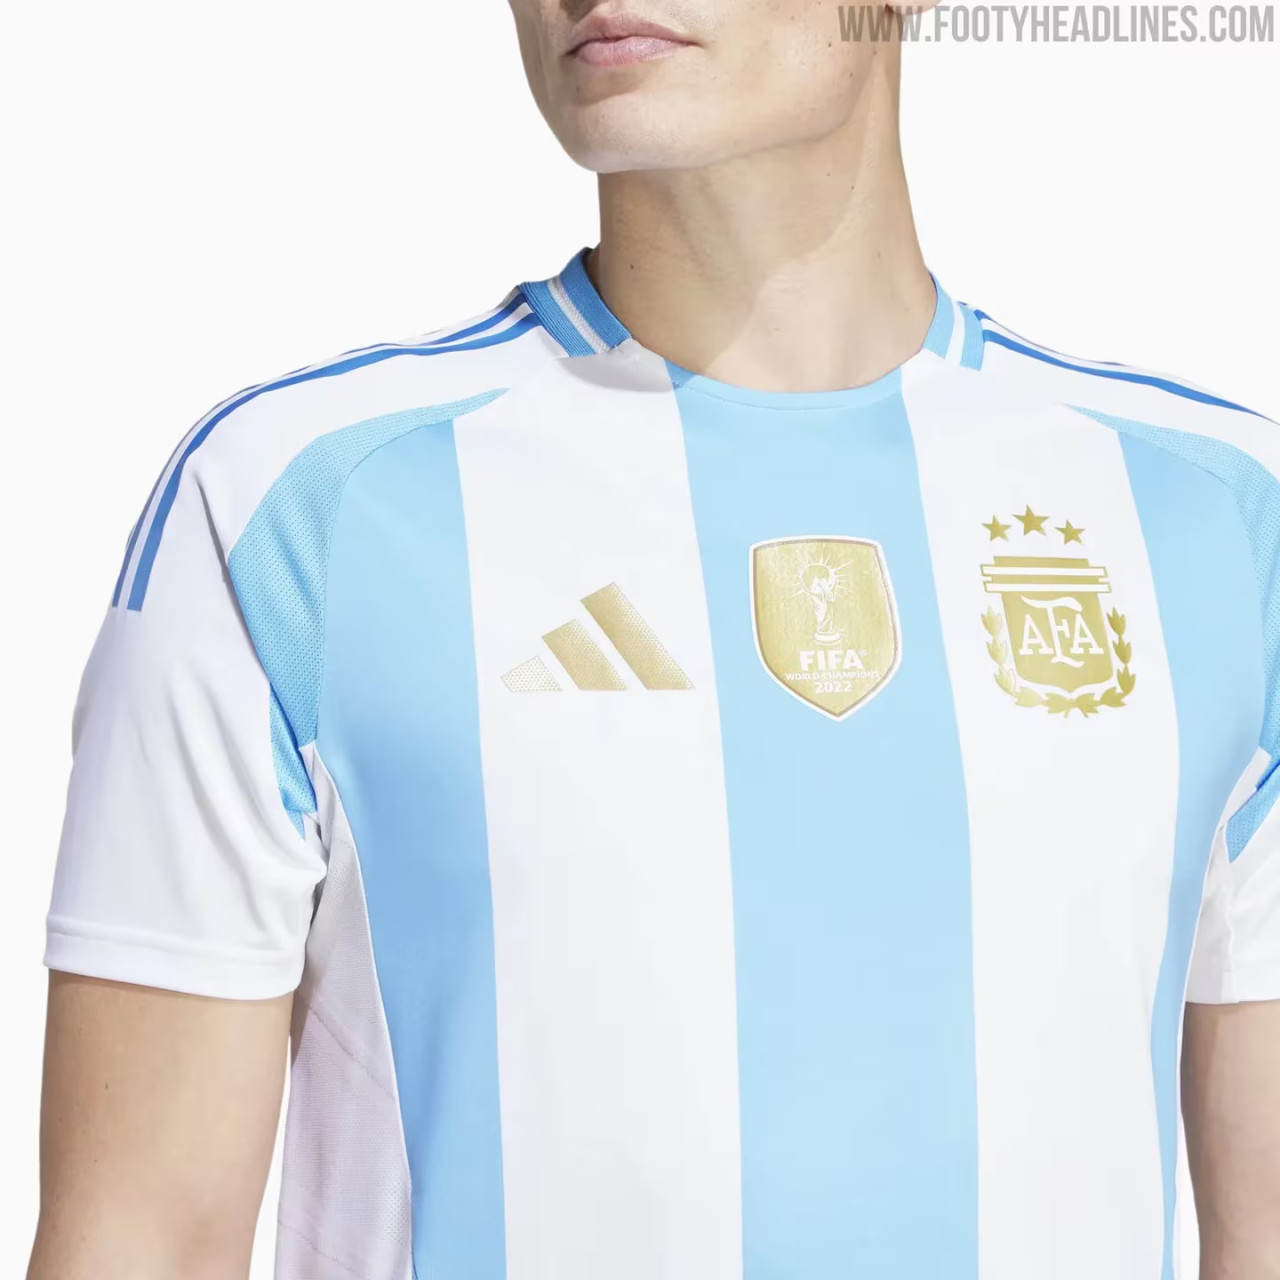 La posible camiseta de la Selección Argentina. Foto: Footy Headlines